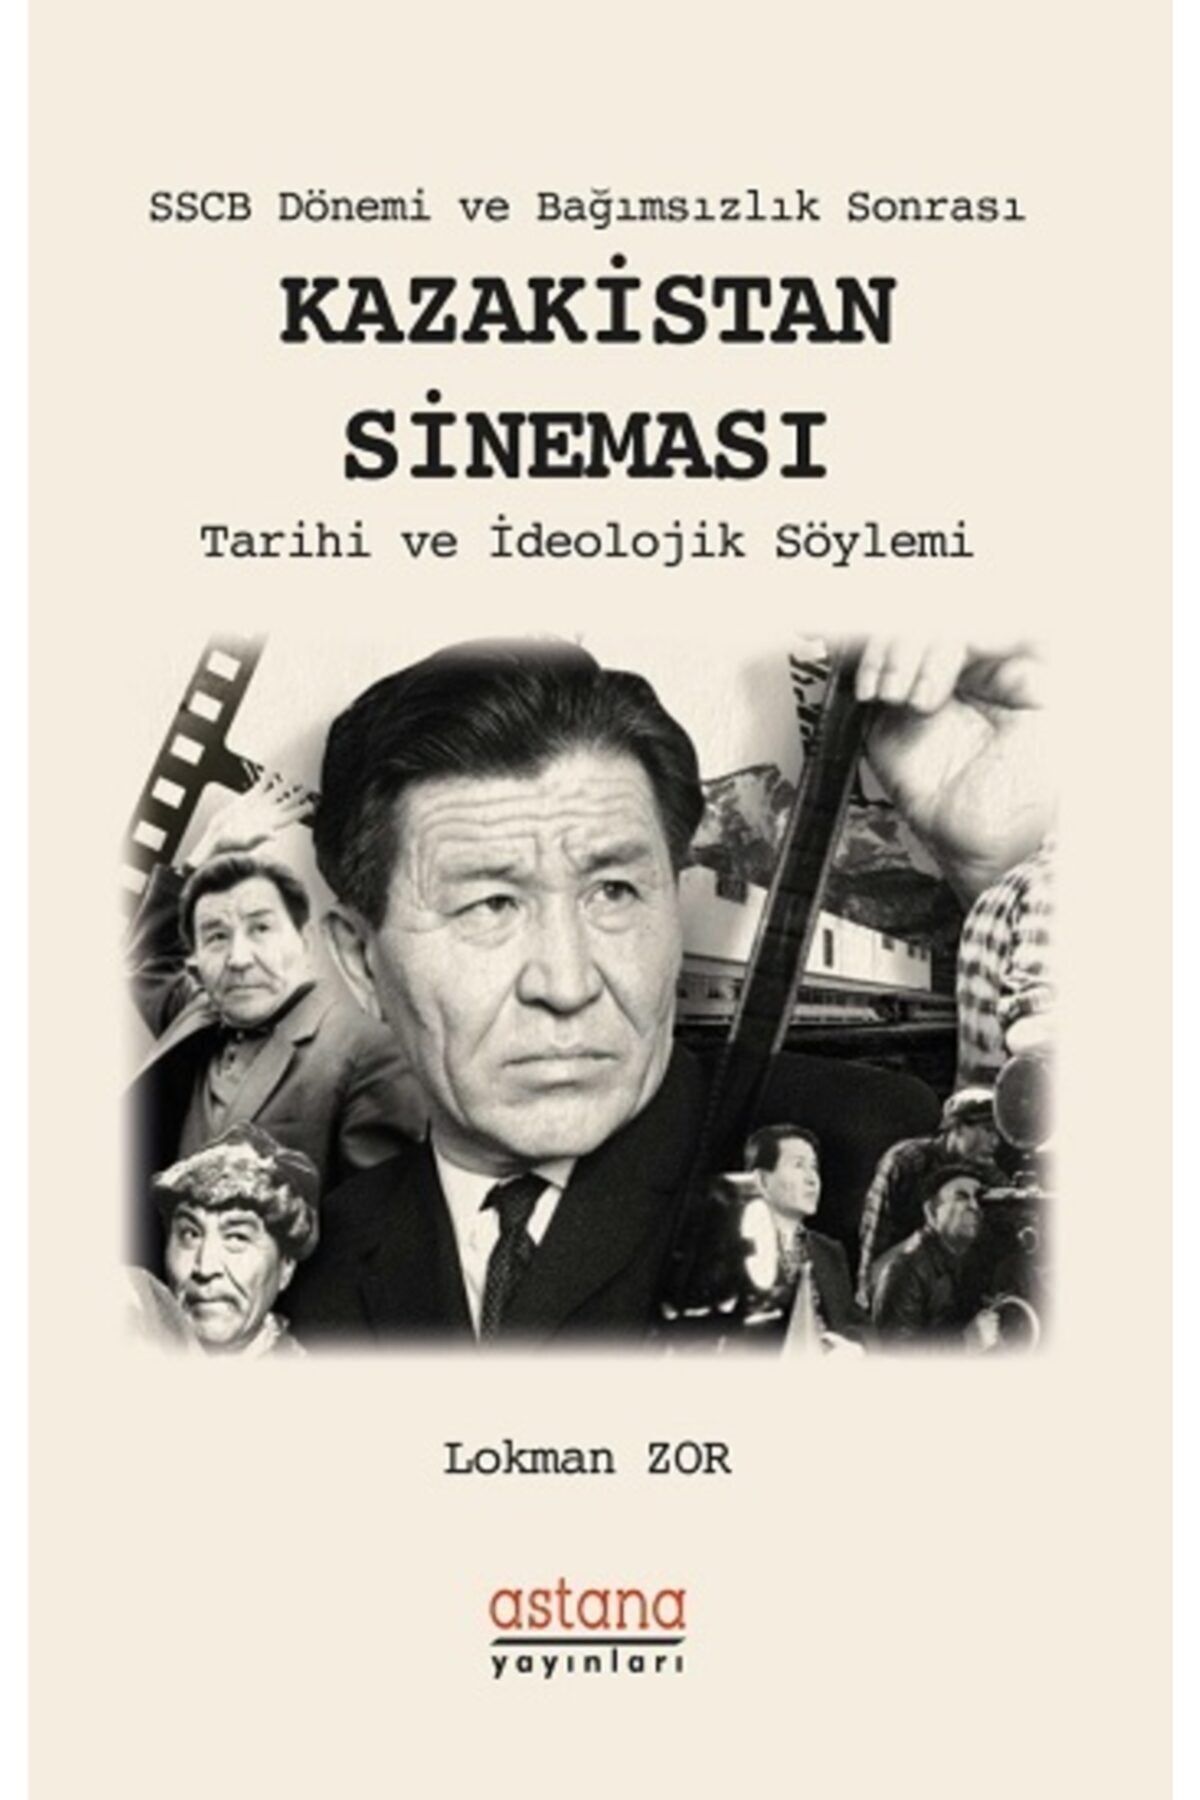 Astana Yayınları Sscb Dönemi Ve Bağımsızlık Sonrası Kazakistan Sineması & Tarihi Ve Ideolojik Söylemi